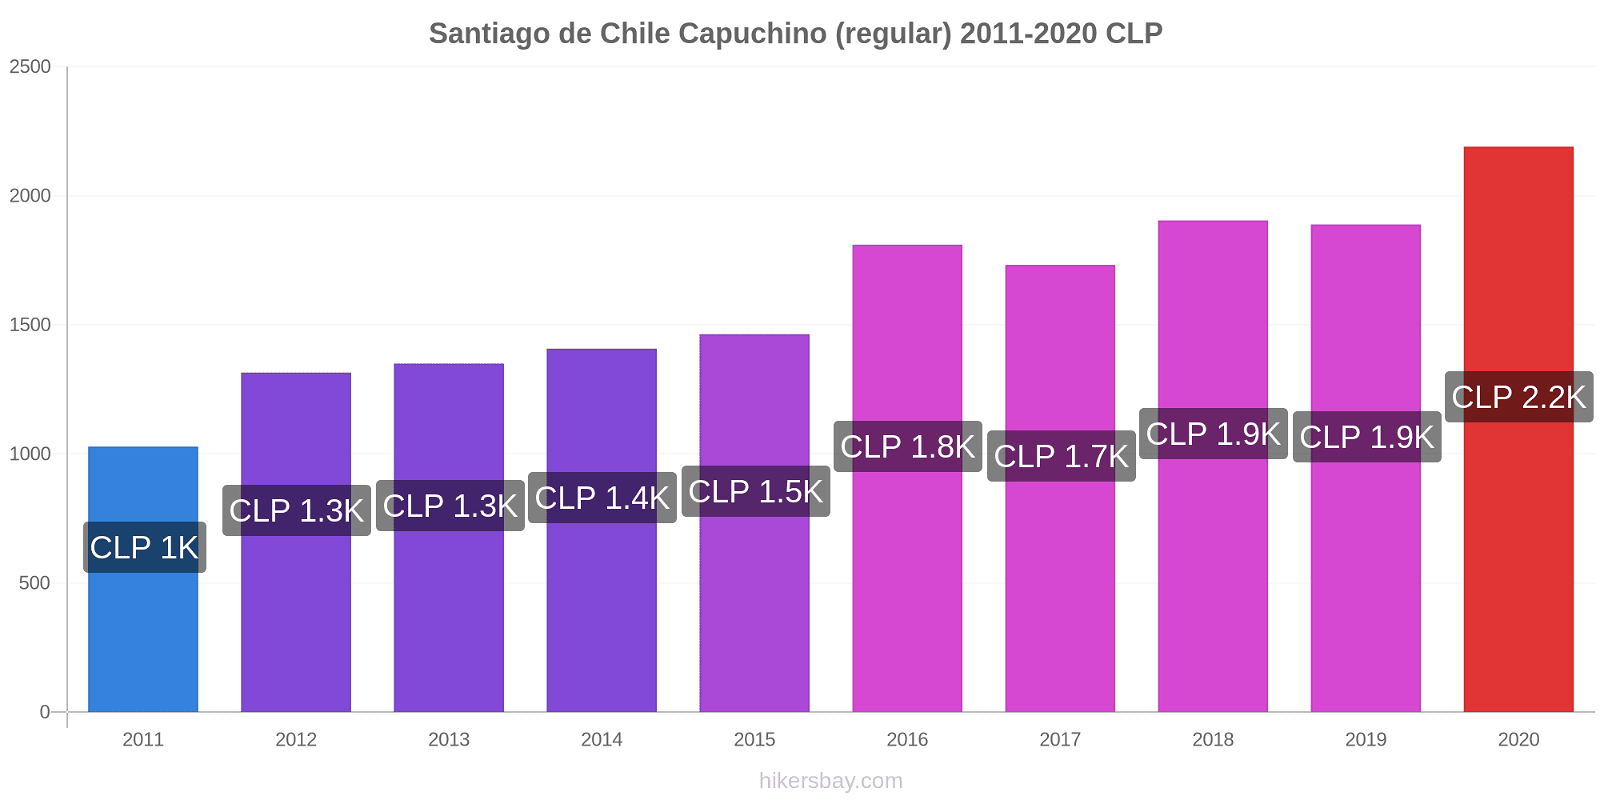 Santiago de Chile cambios de precios Capuchino (regular) hikersbay.com